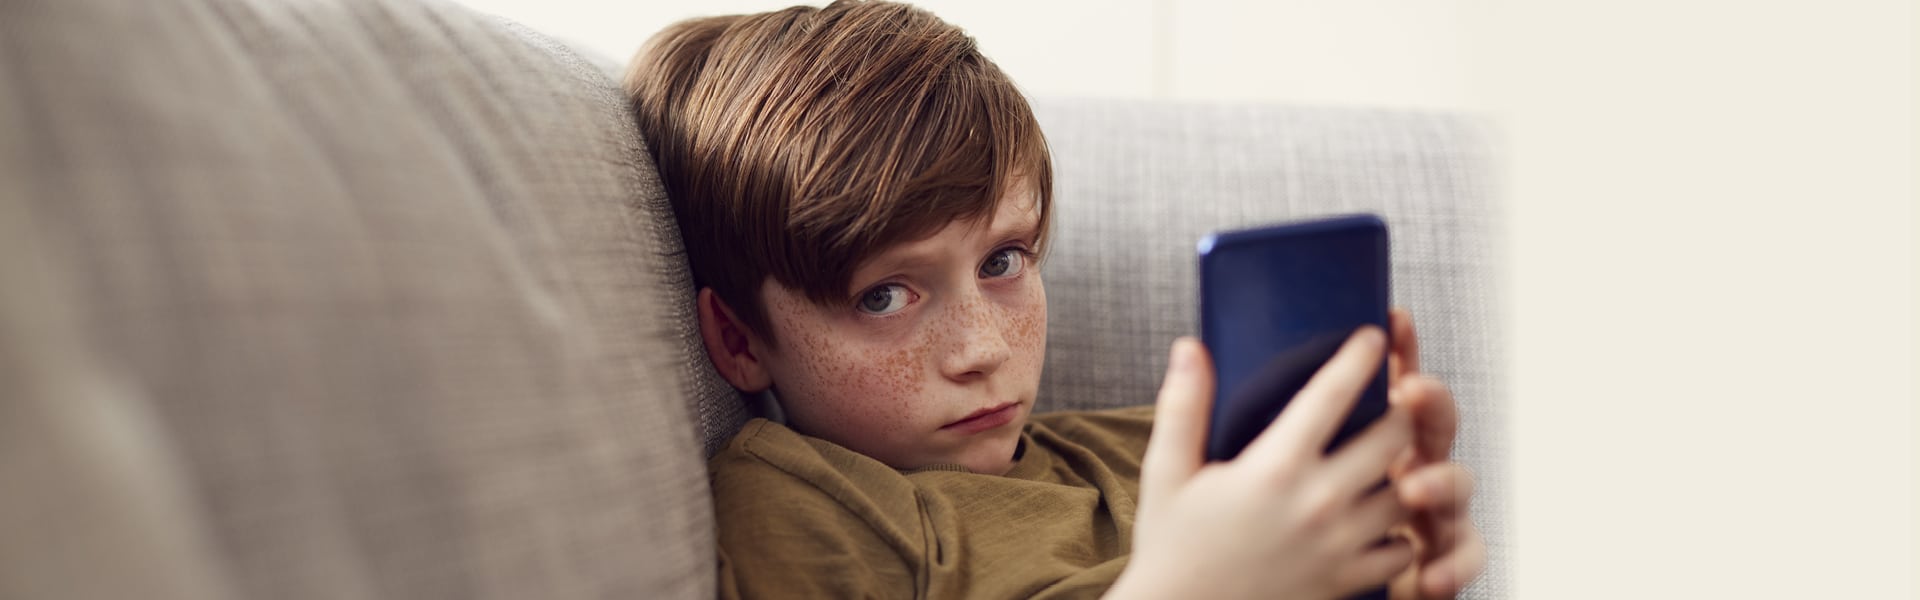 Facebook_Hvad gør skærme ved børns hjerner